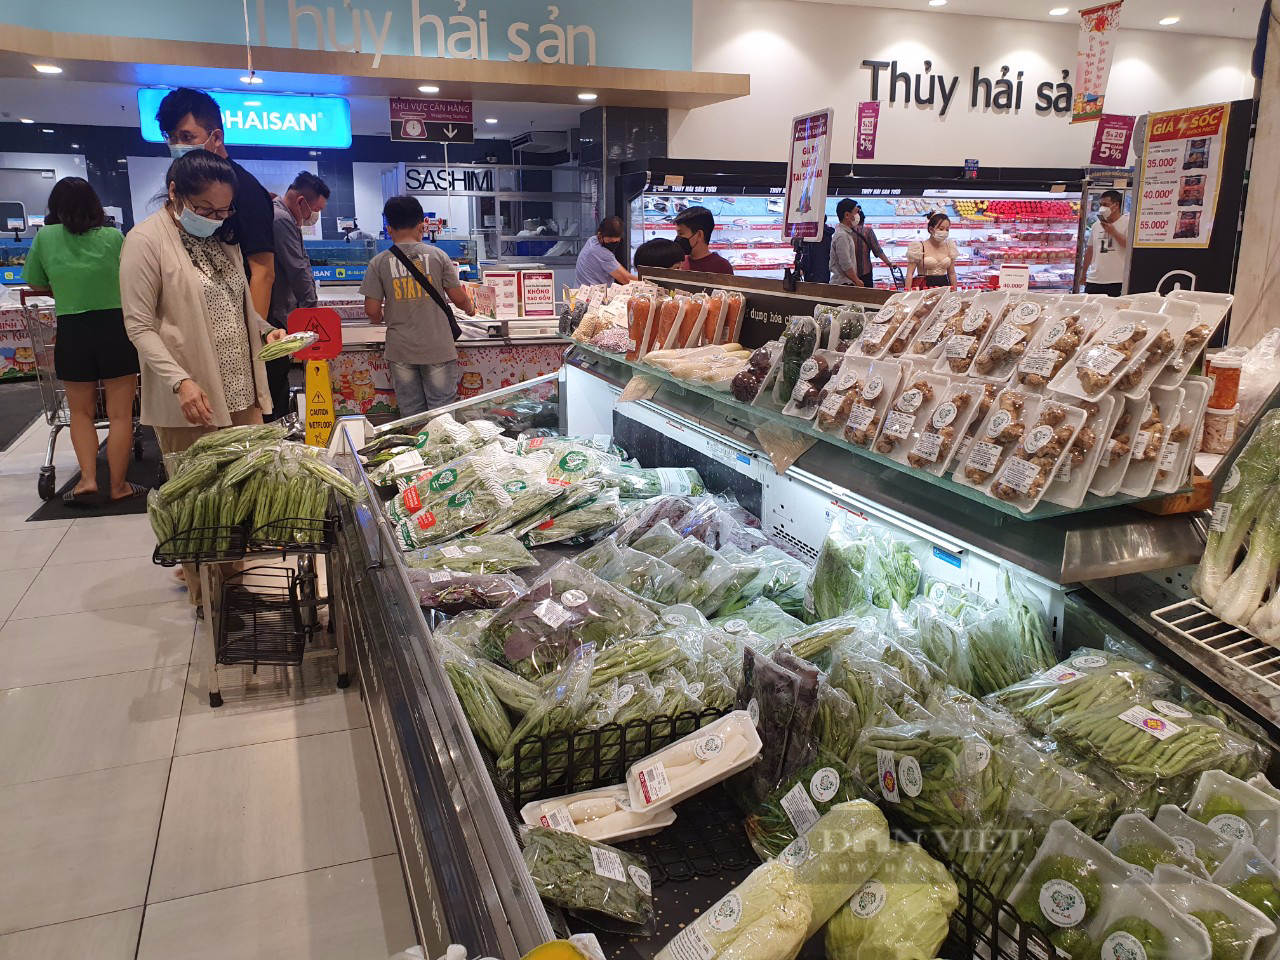 Thực phẩm tại siêu thị đầu năm ê hề, khuyến mãi tới 50% chờ khách - Ảnh 1.